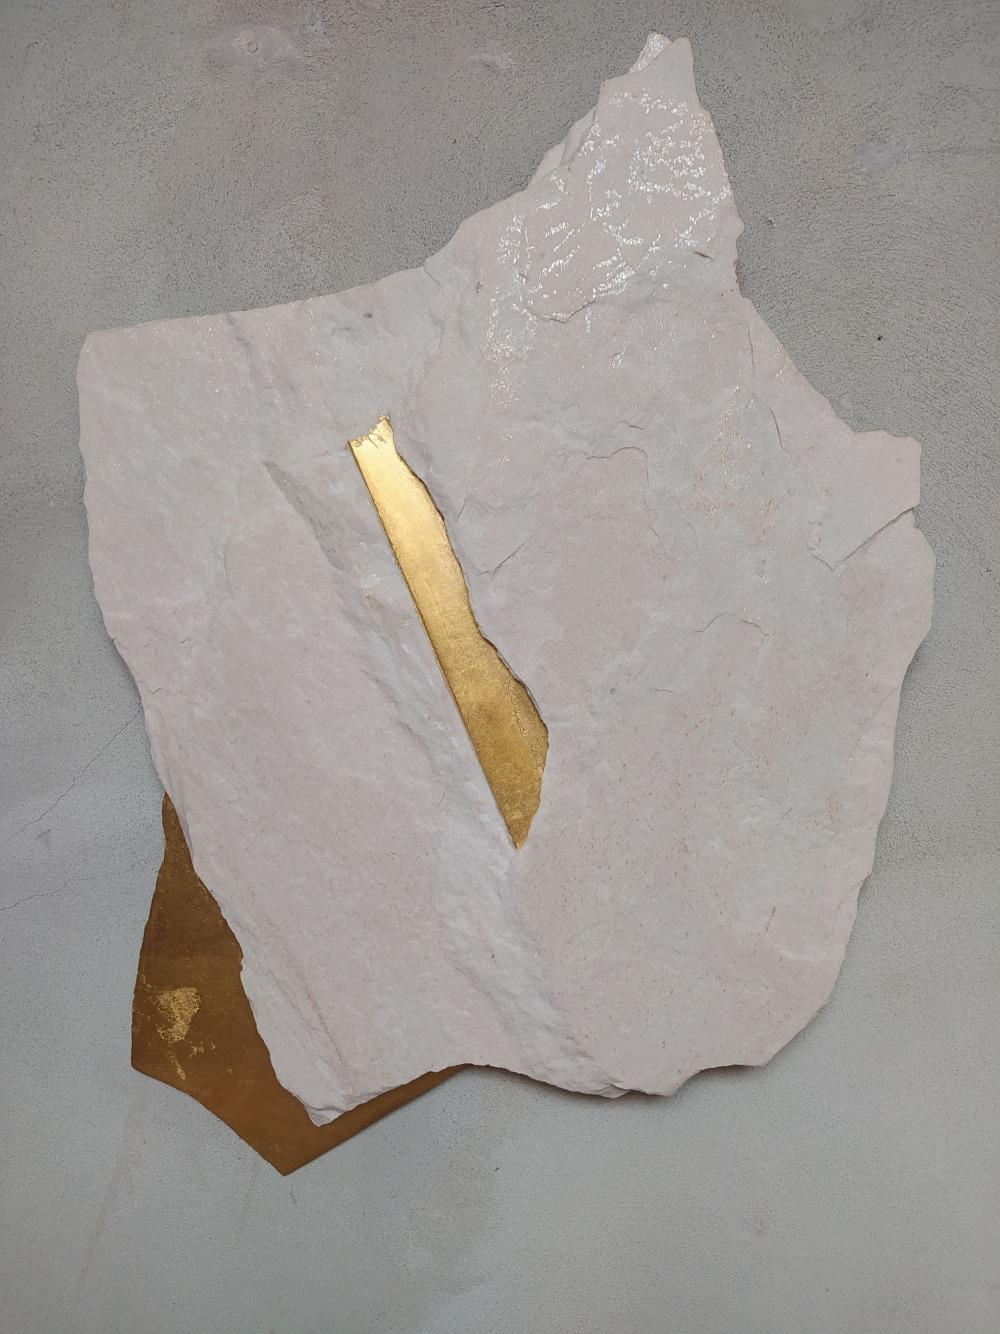 Sezione Aurea A7 est une sculpture unique de l'artiste contemporain Mattia Bosco. Cette sculpture est réalisée en marbre de Palissandre et en feuilles d'or. Ses dimensions sont de 72 × 53,5 × 4 cm (28,3 × 21,1 × 1,6 in). 

Le processus utilisé par